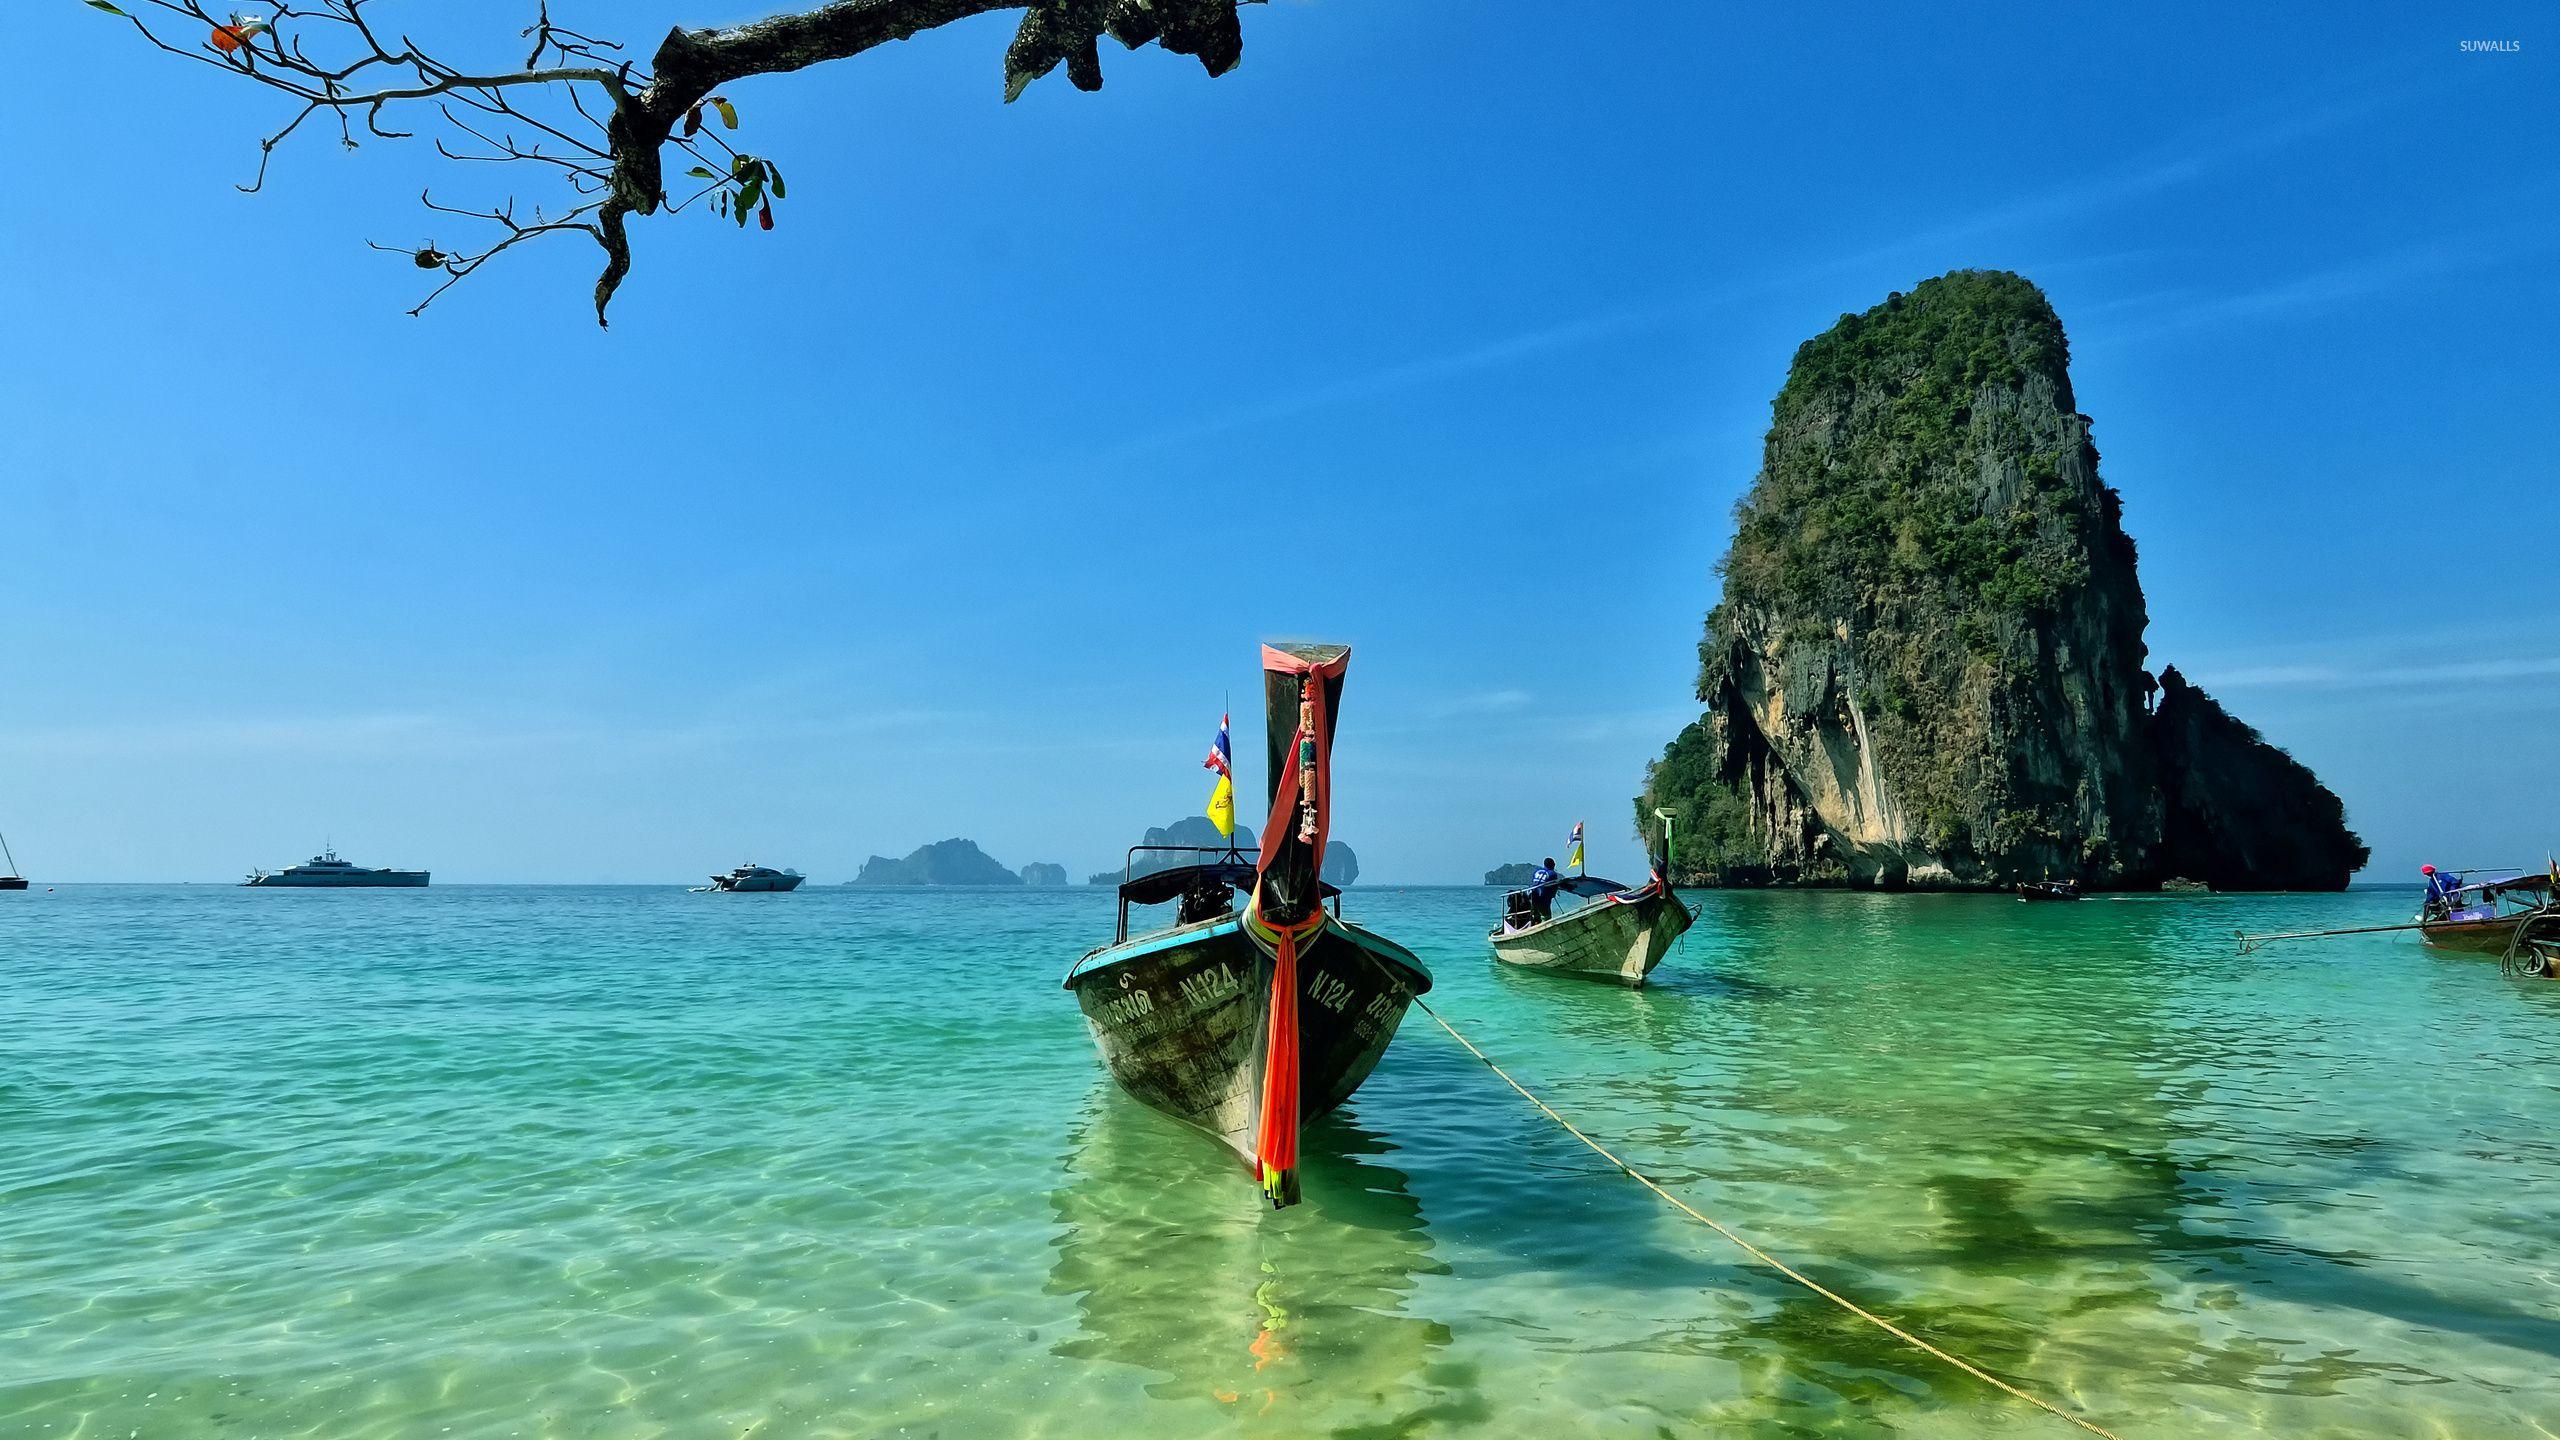 Hình nền 2560x1440 Bãi biển Railay ở Thái Lan - Hình nền bãi biển